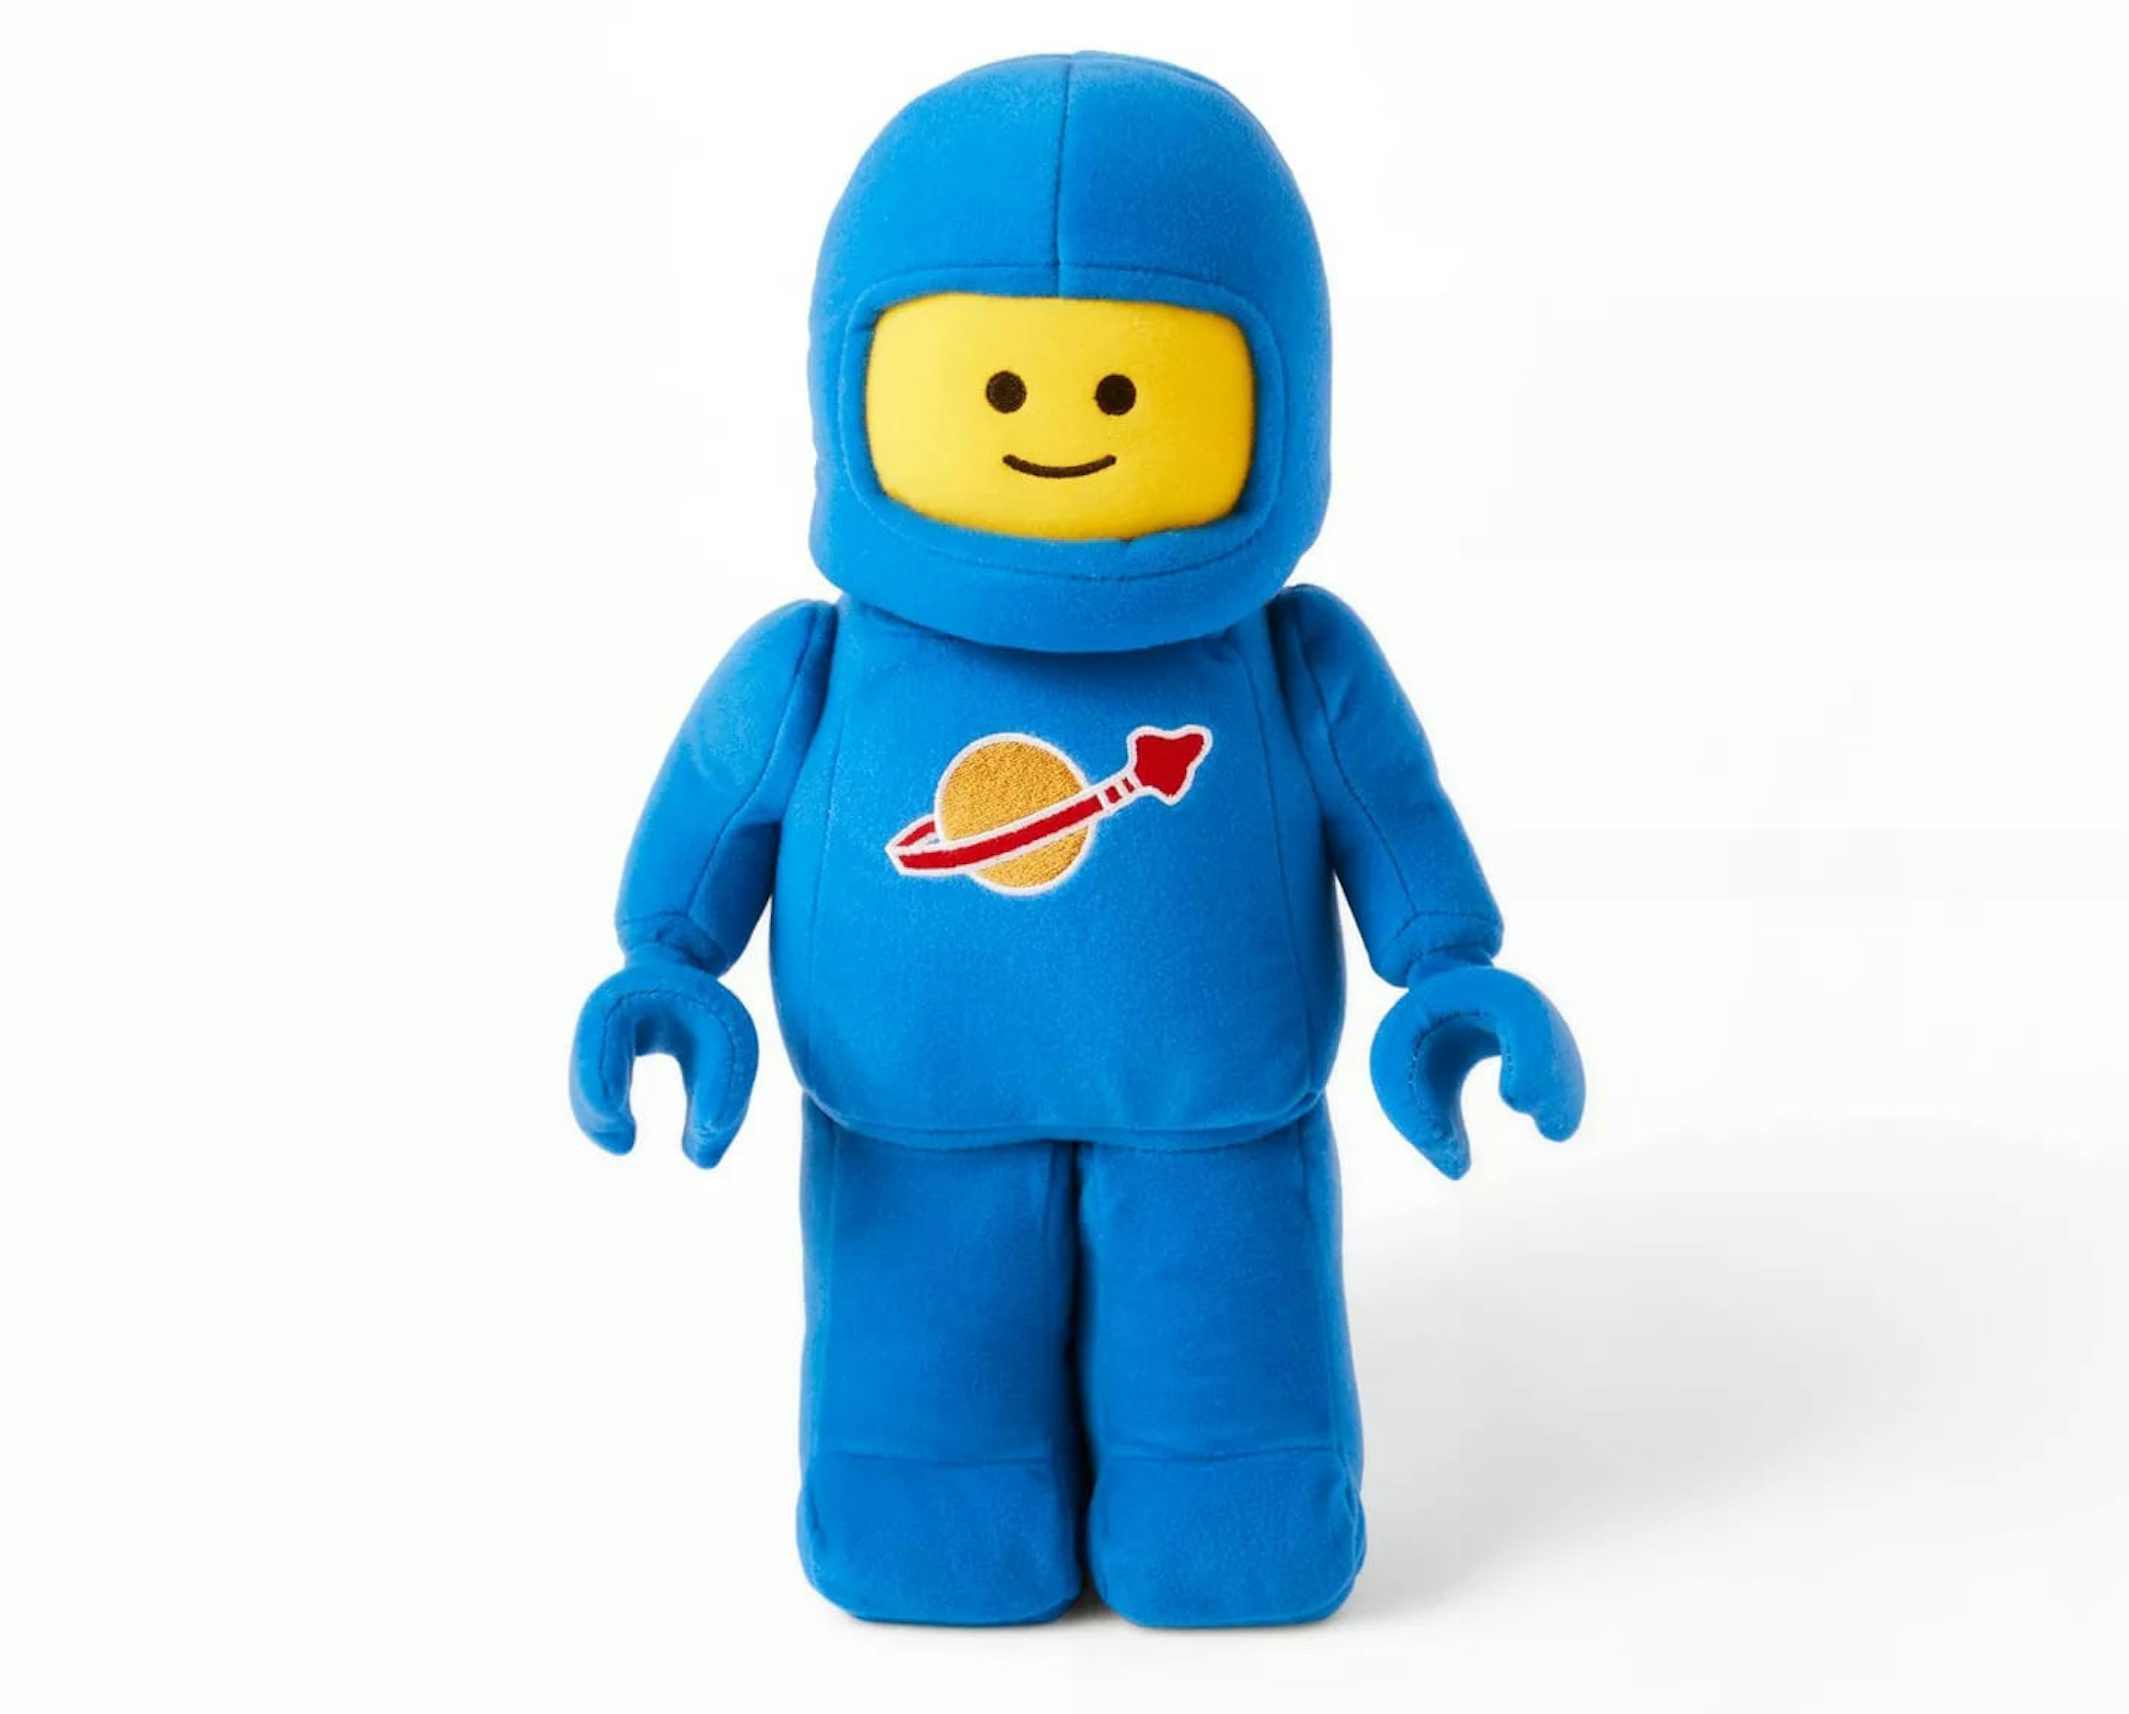 LEGO Collection x Target Minifigure Astronaut Plush Blue - FW21 - DE